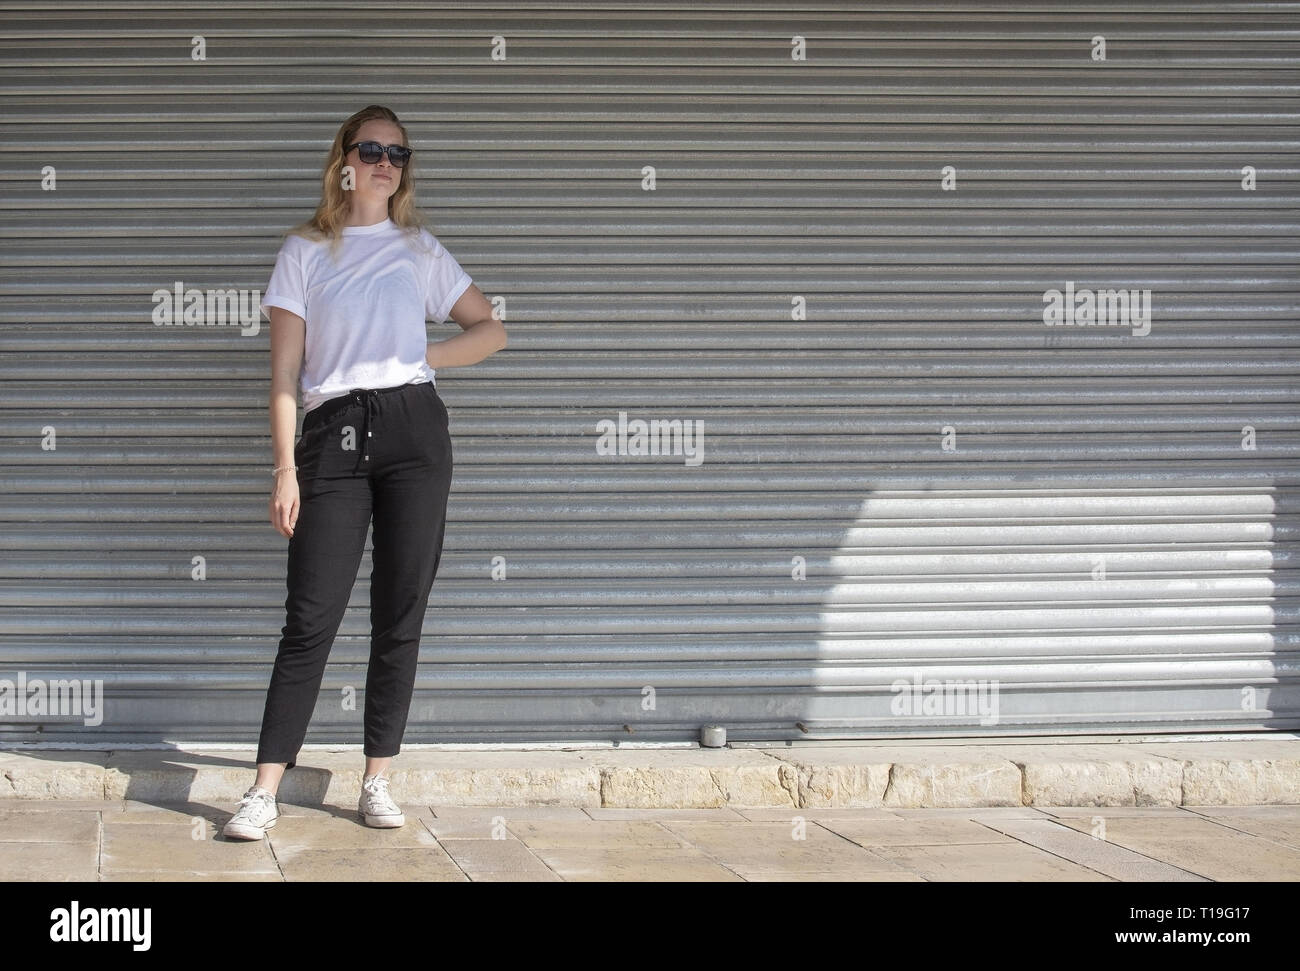 Voller Körper Foto der jungen Casual sportlich gekleidet blonde Frau mit Sonnenbrille im weißen T-Shirt gegen Wellblech wall street style Stockfoto